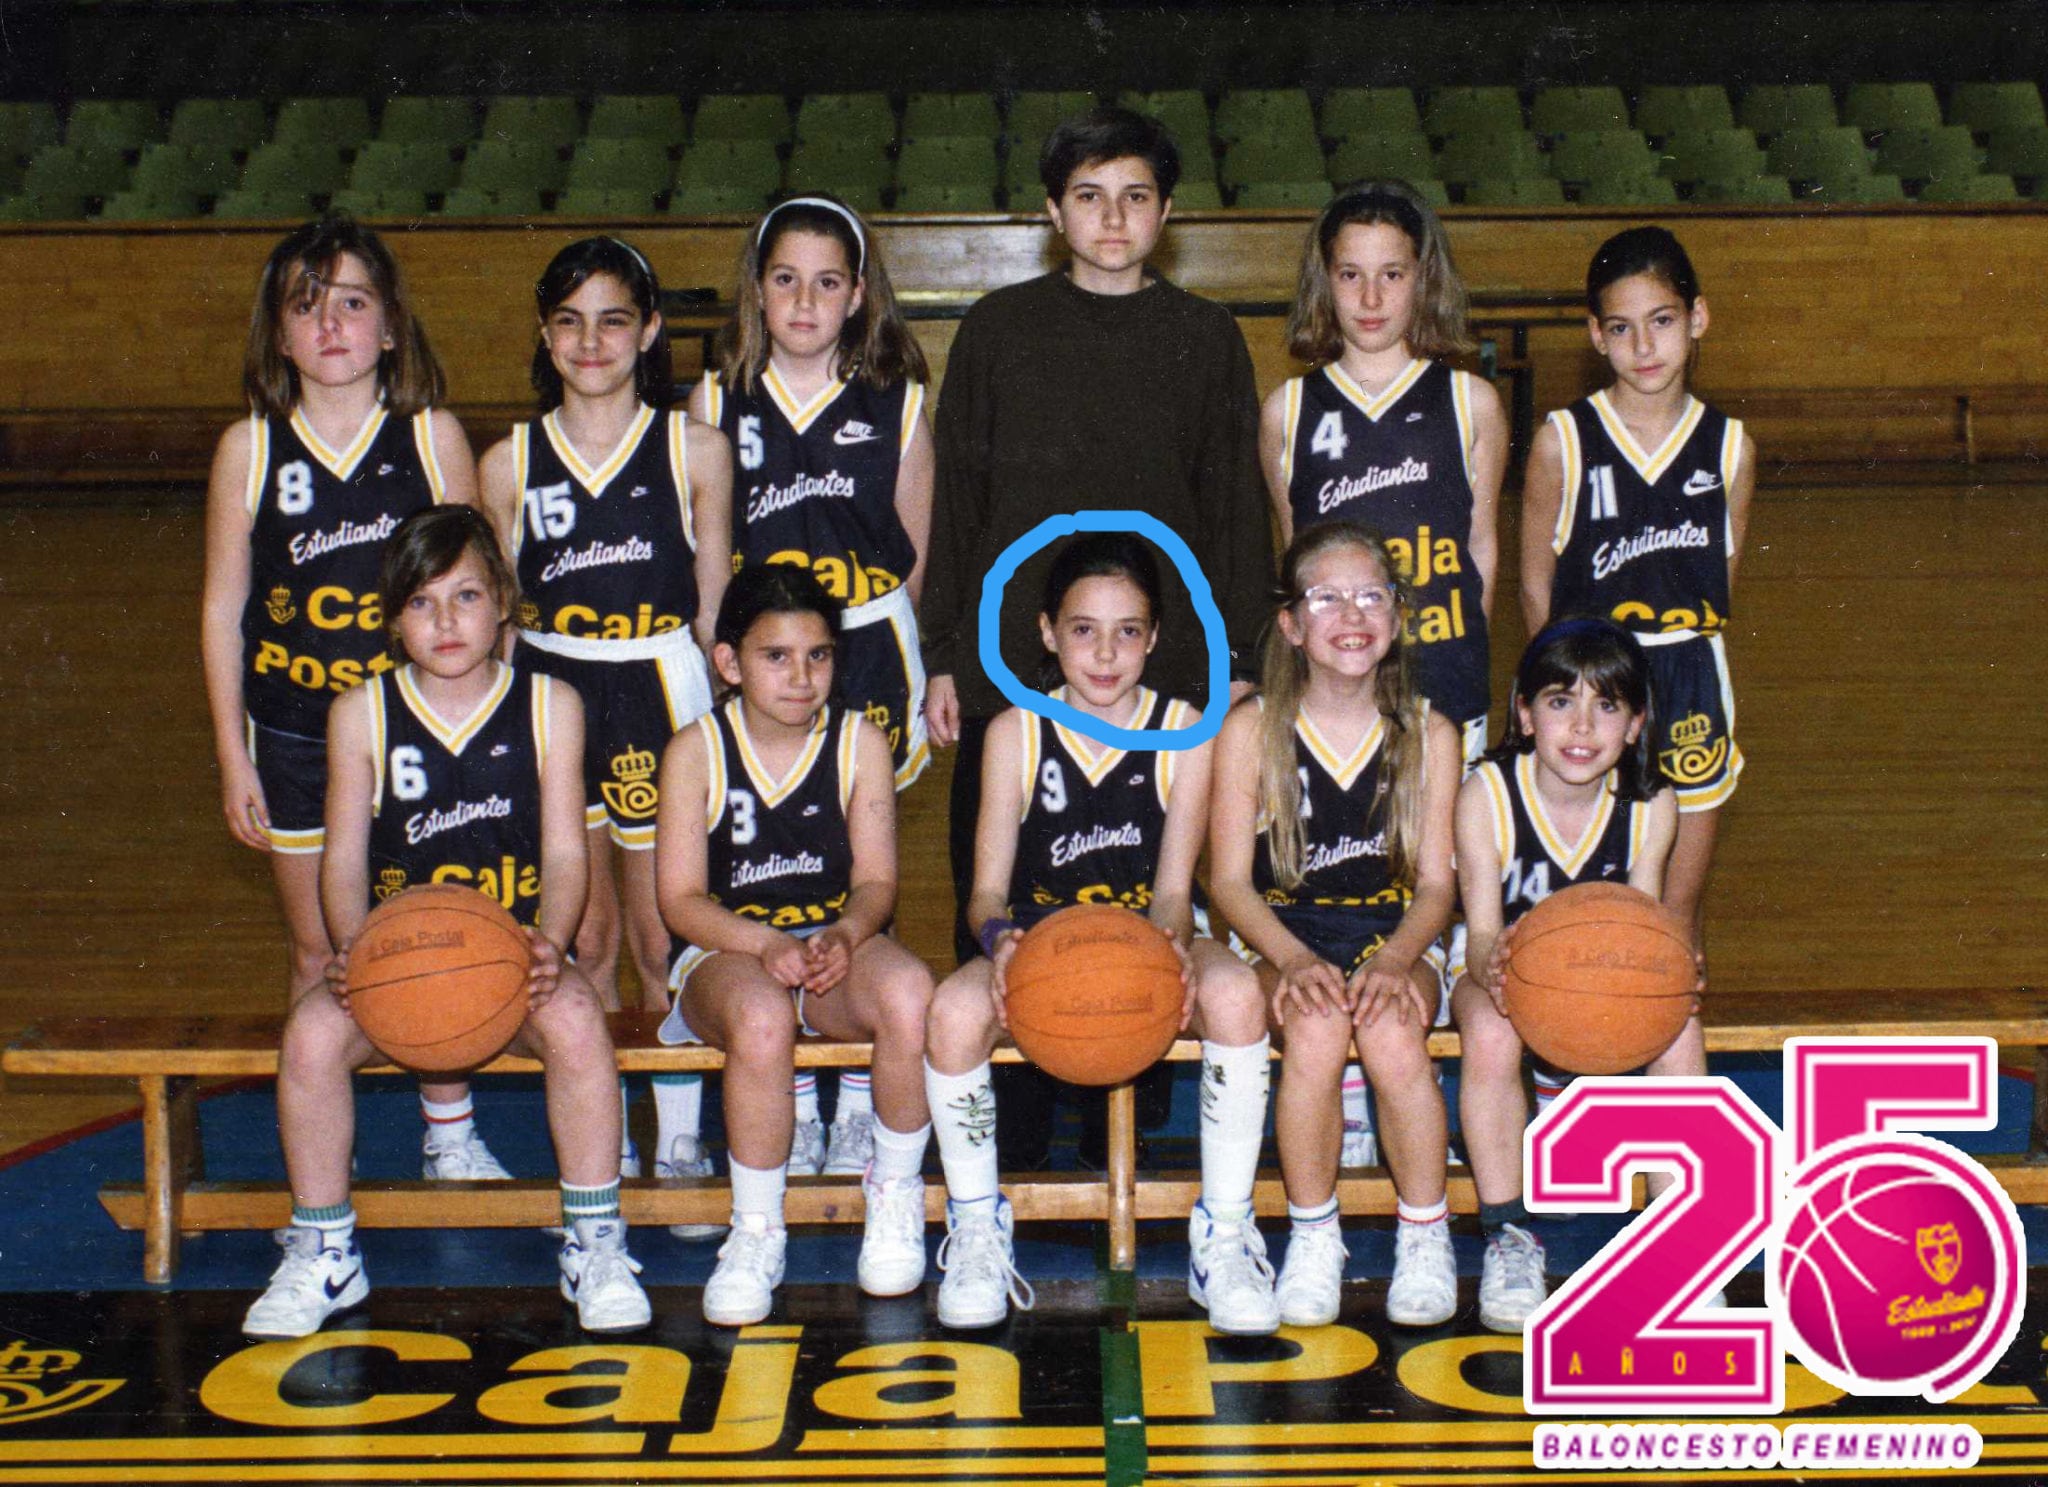 25EstuFem. Clara Bermejo, la primera profesional. “Lo que había que hacer al salir de clase en el Ramiro era jugar al basket”